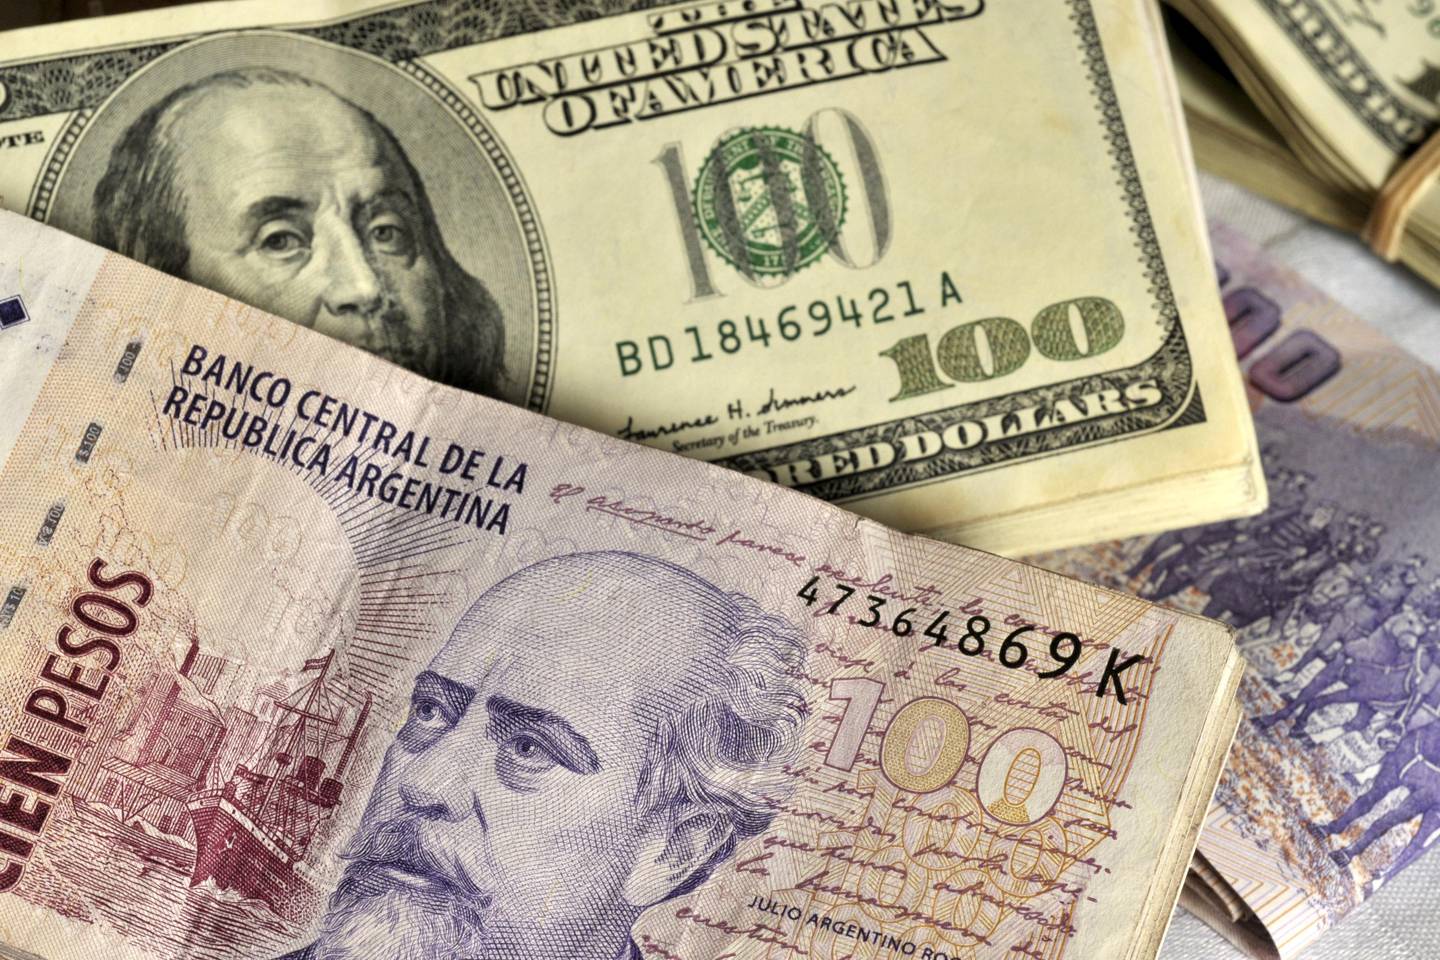 Fajos de billetes de 100 pesos argentinos y billetes de US$100.Fotógrafo: Diego Giudice/Bloomberg